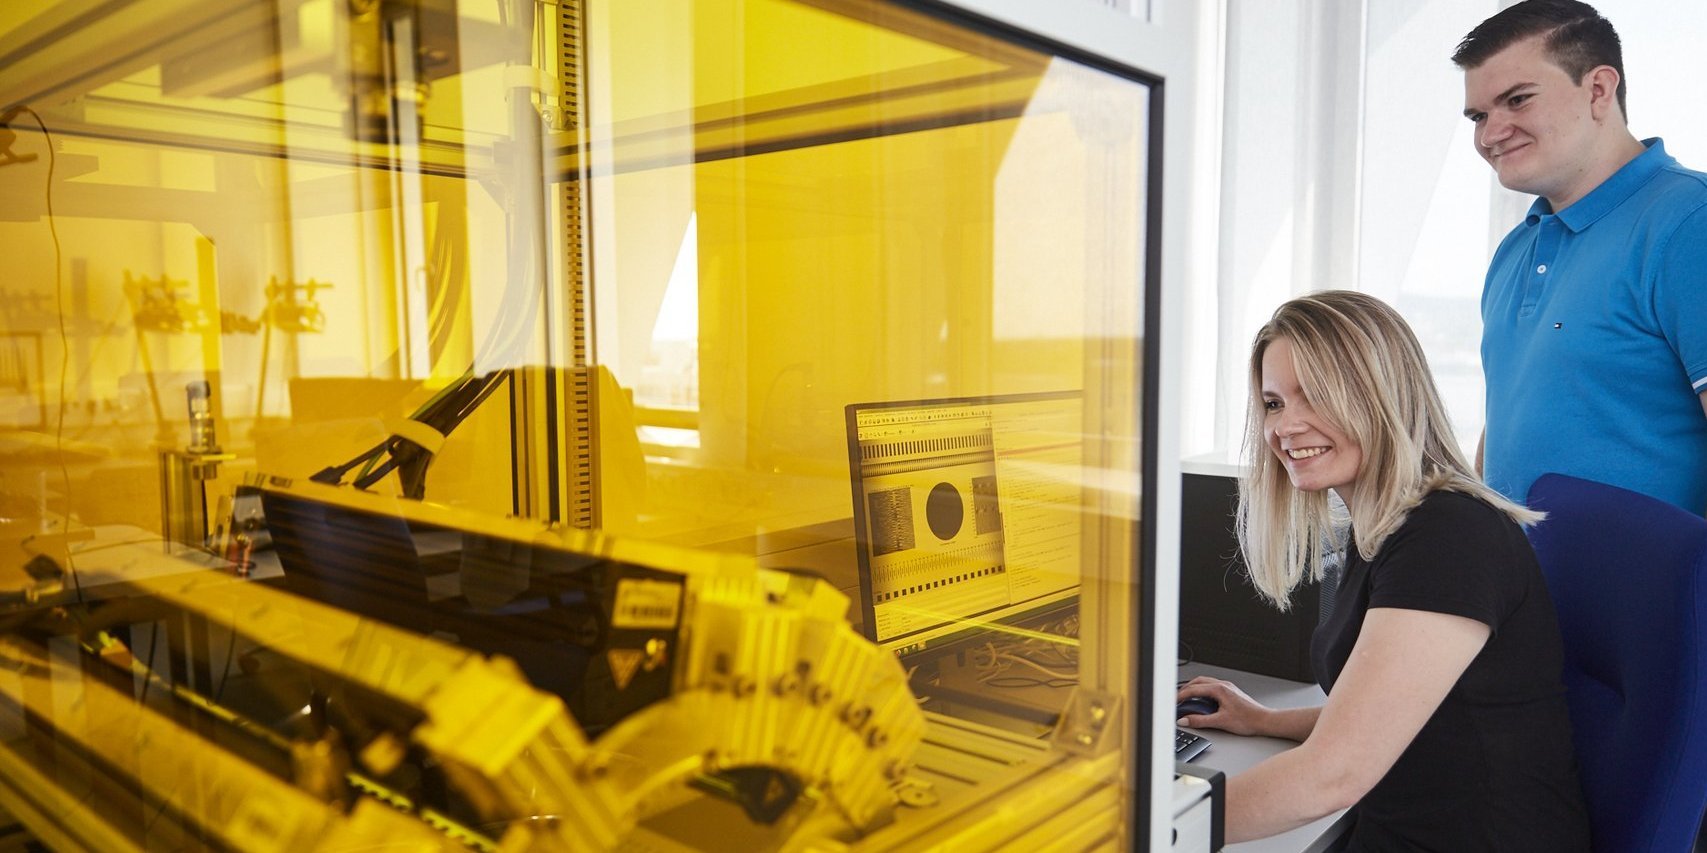 Im Vordergrund sieht man in einem Schutzgehäuse aus gelb eingefärbtem Plexiglas eine Maschine. Ein dicker Kabelstrang wird nach außem zu einem Rechner geführt. Dort sitzt eine Studentin und bedient die Mouse, während sie gemeinsam mit einem Studenten beobachtet, ob die Maschine entsprechend auf die Befehle reagiert.